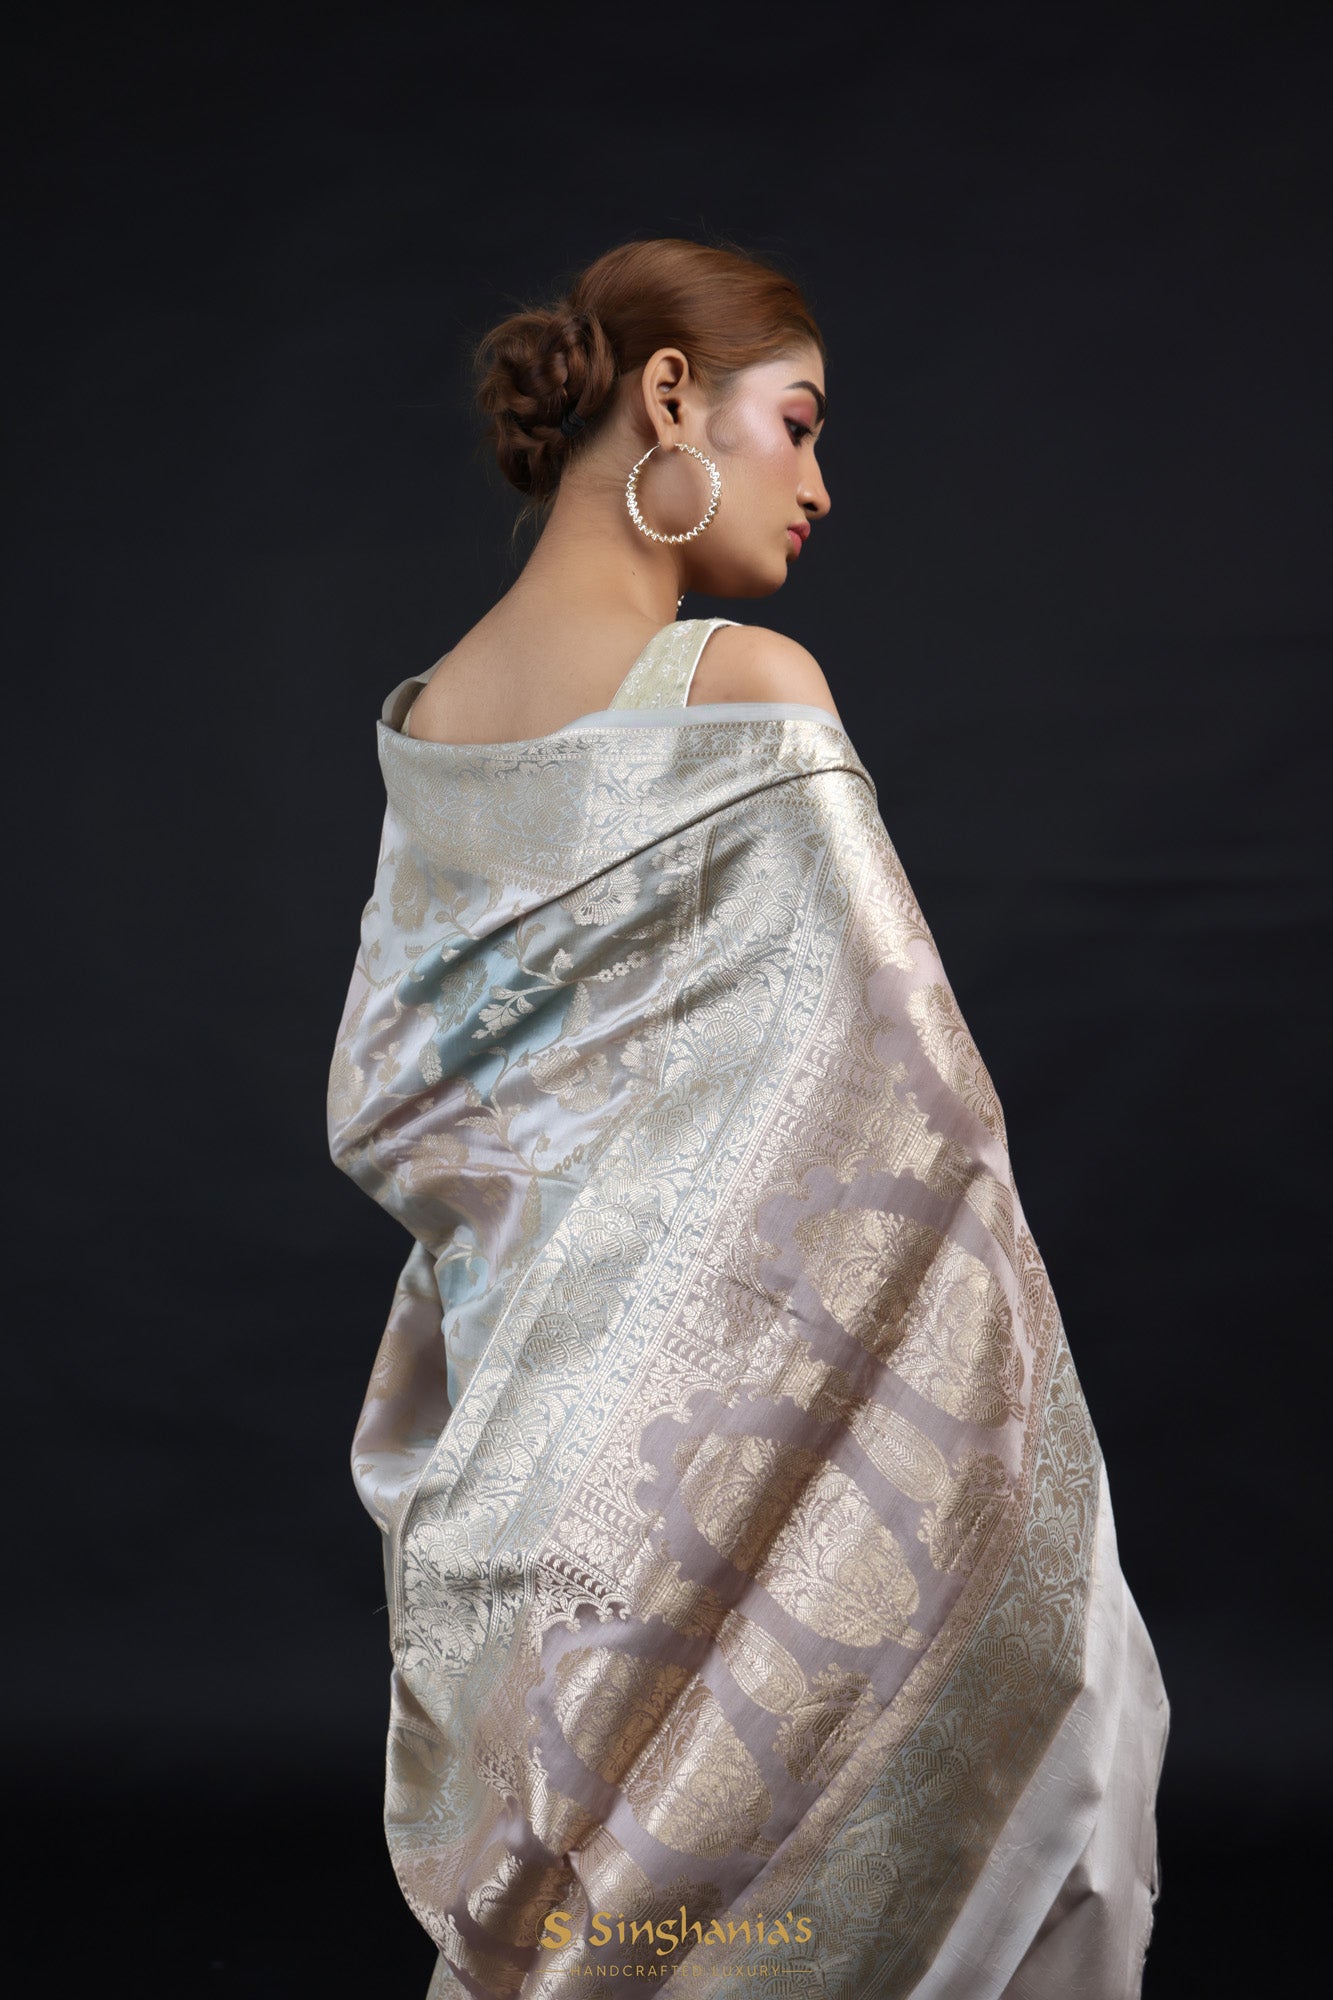 Silver Grey Rangkat Banarasi Silk Saree With Floral Weaving